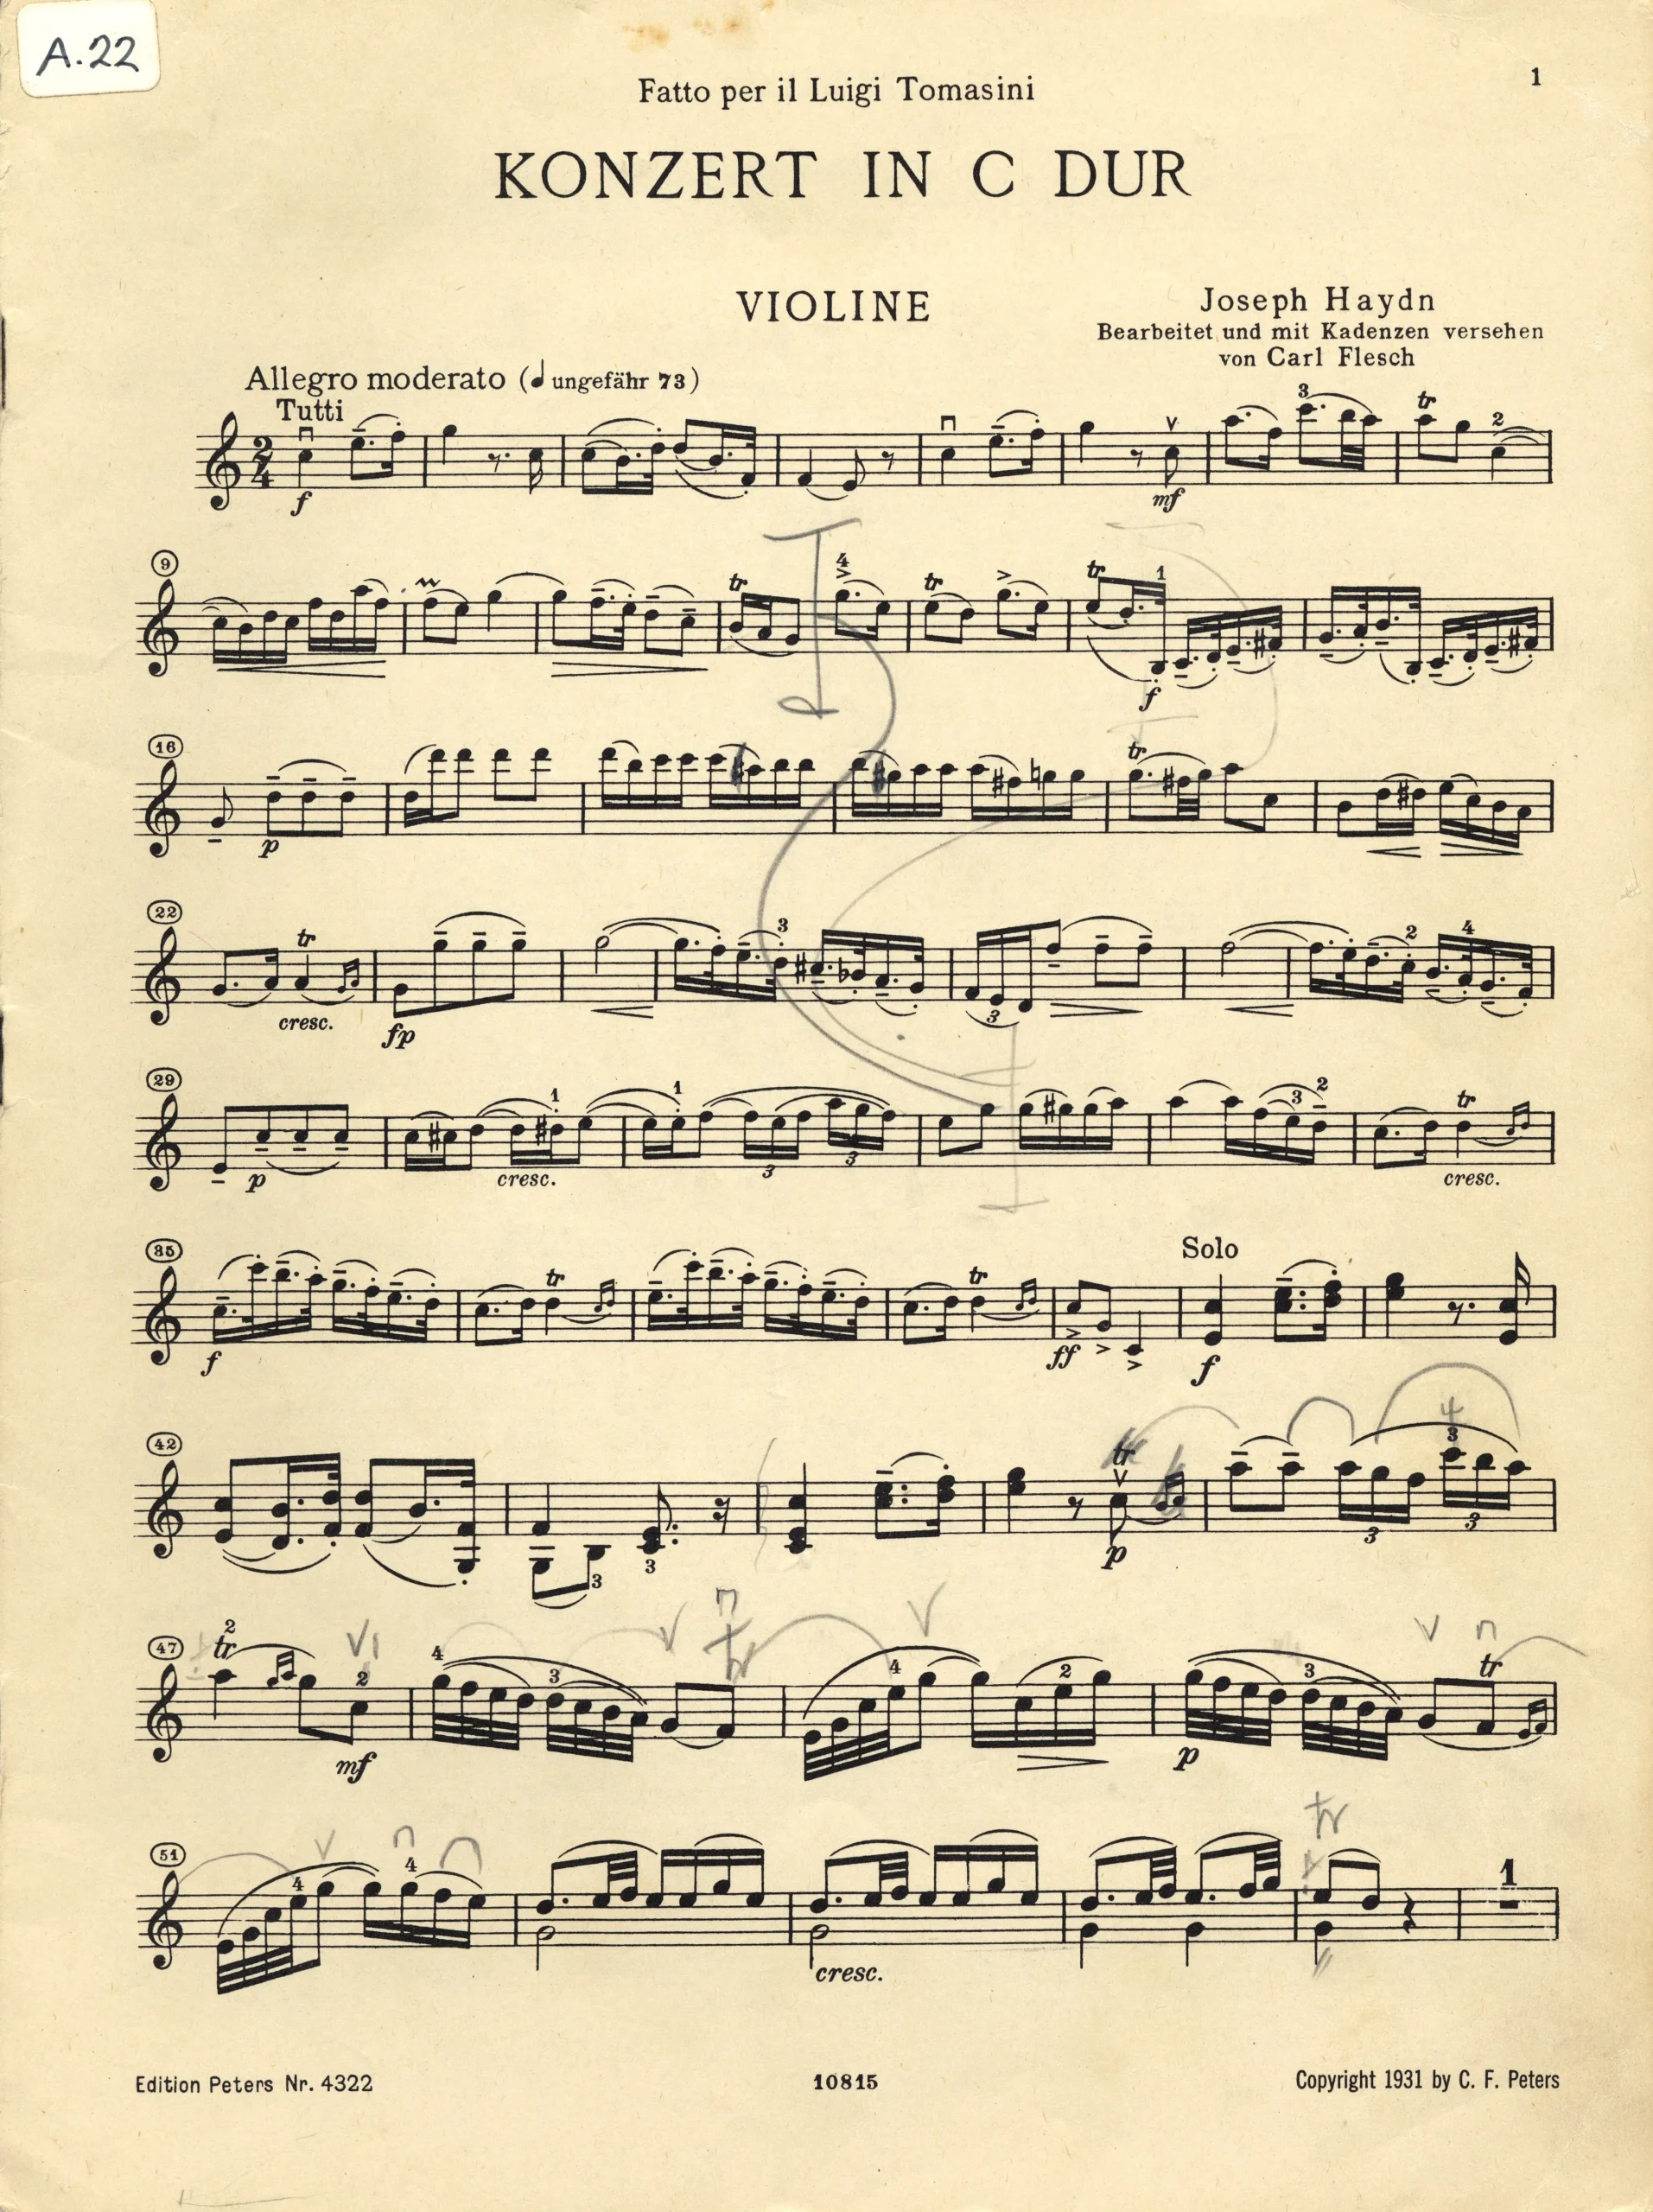 concierto para violin de haydn contexto - Haydn escribió conciertos